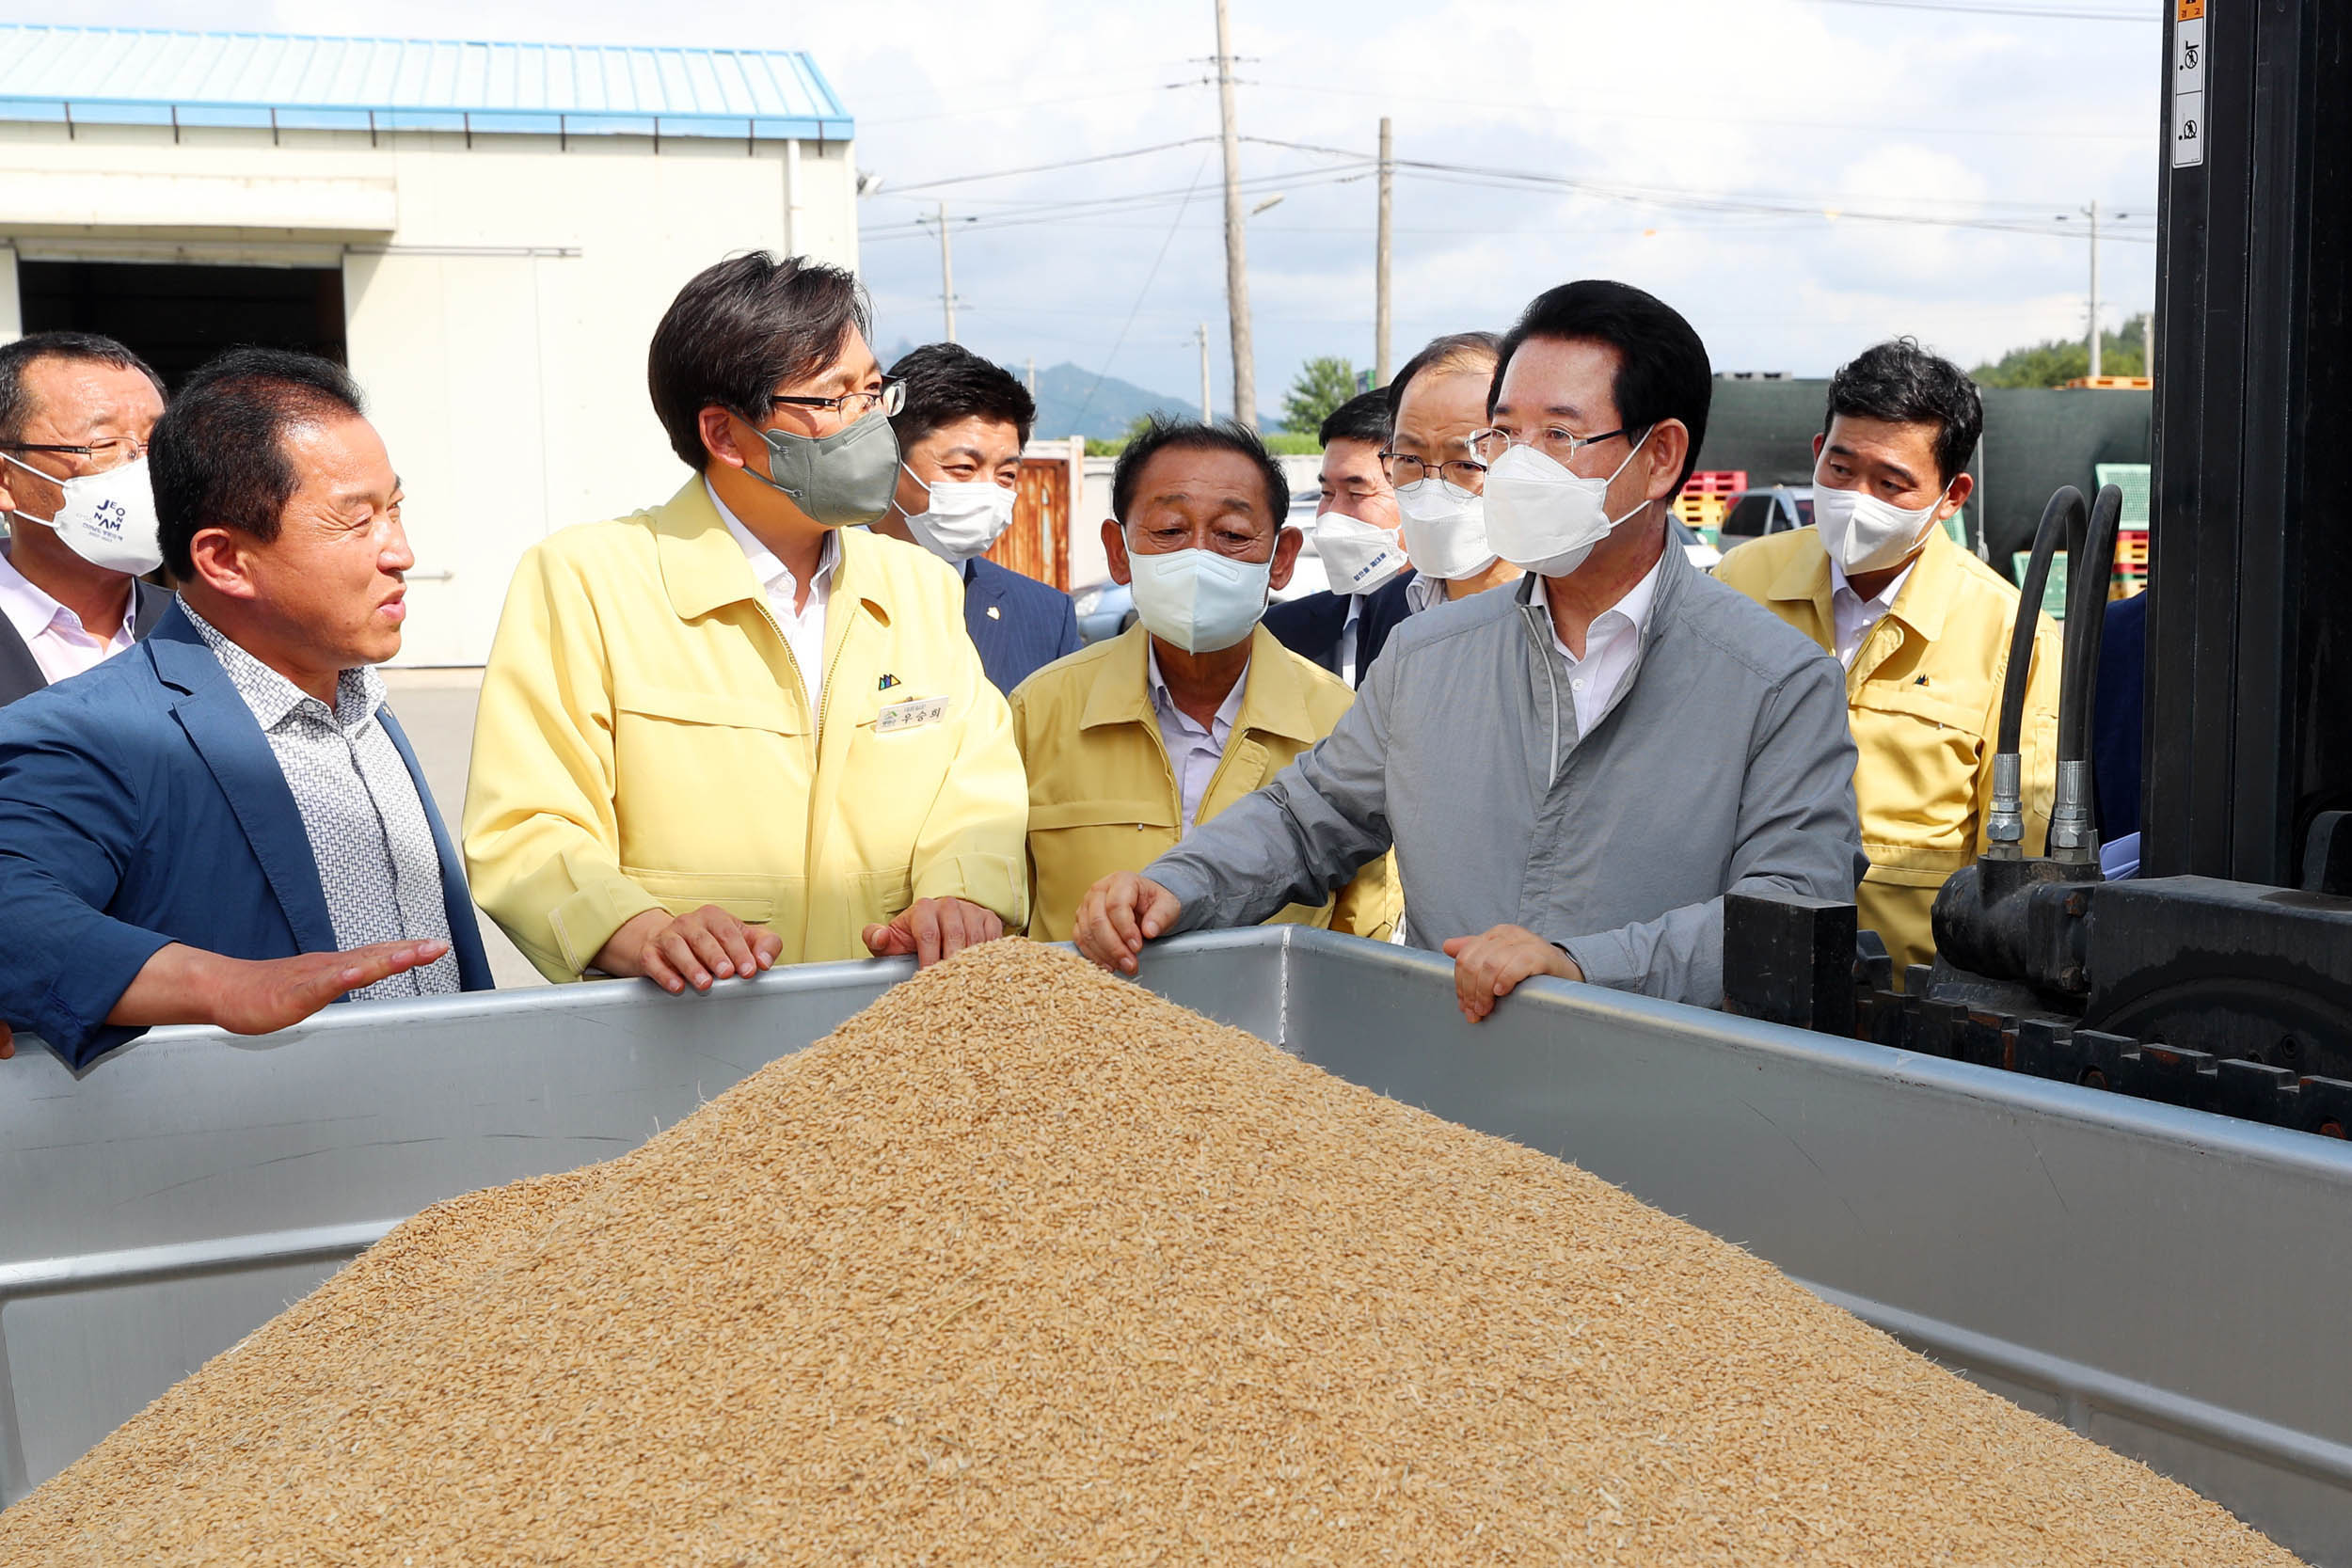 김영록 전남도지사가 11일 영암통합미곡종합처리장을 방문해 쌀값 하락에 따른 전남도 차원의 지원 대책 마련과 정부의 대책 마련을 건의하겠다고 밝혔다.